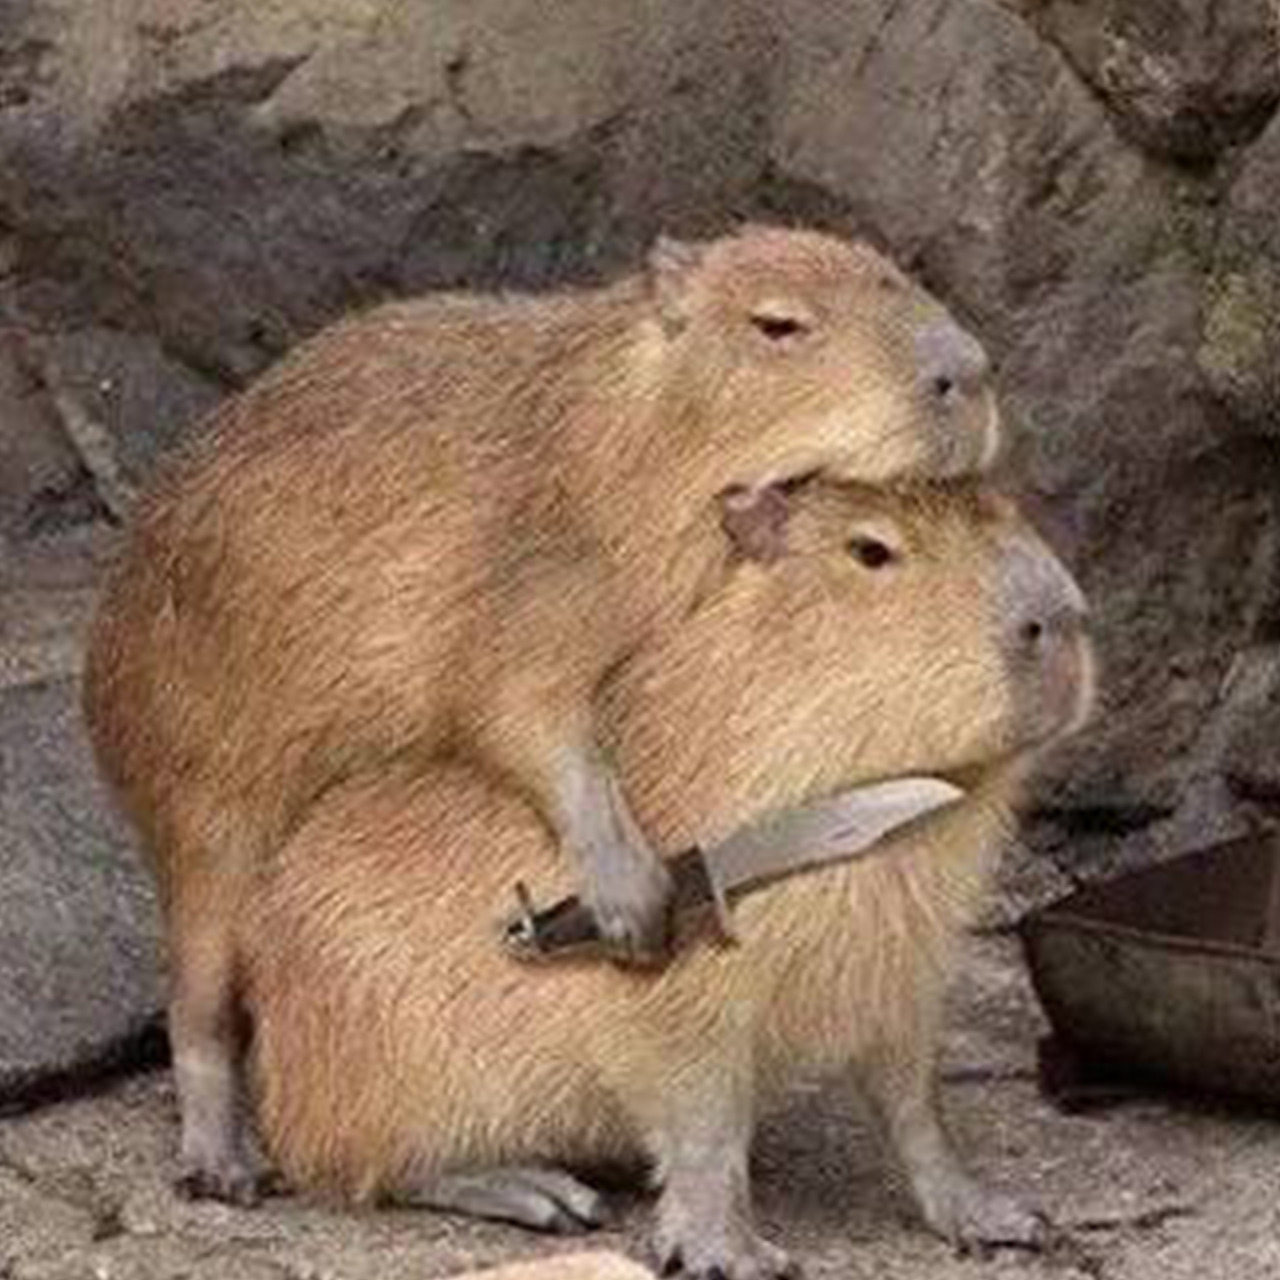 DÉBORA SANTOS — I LOVE CAPYBARAS SO MUCH I made these capybara